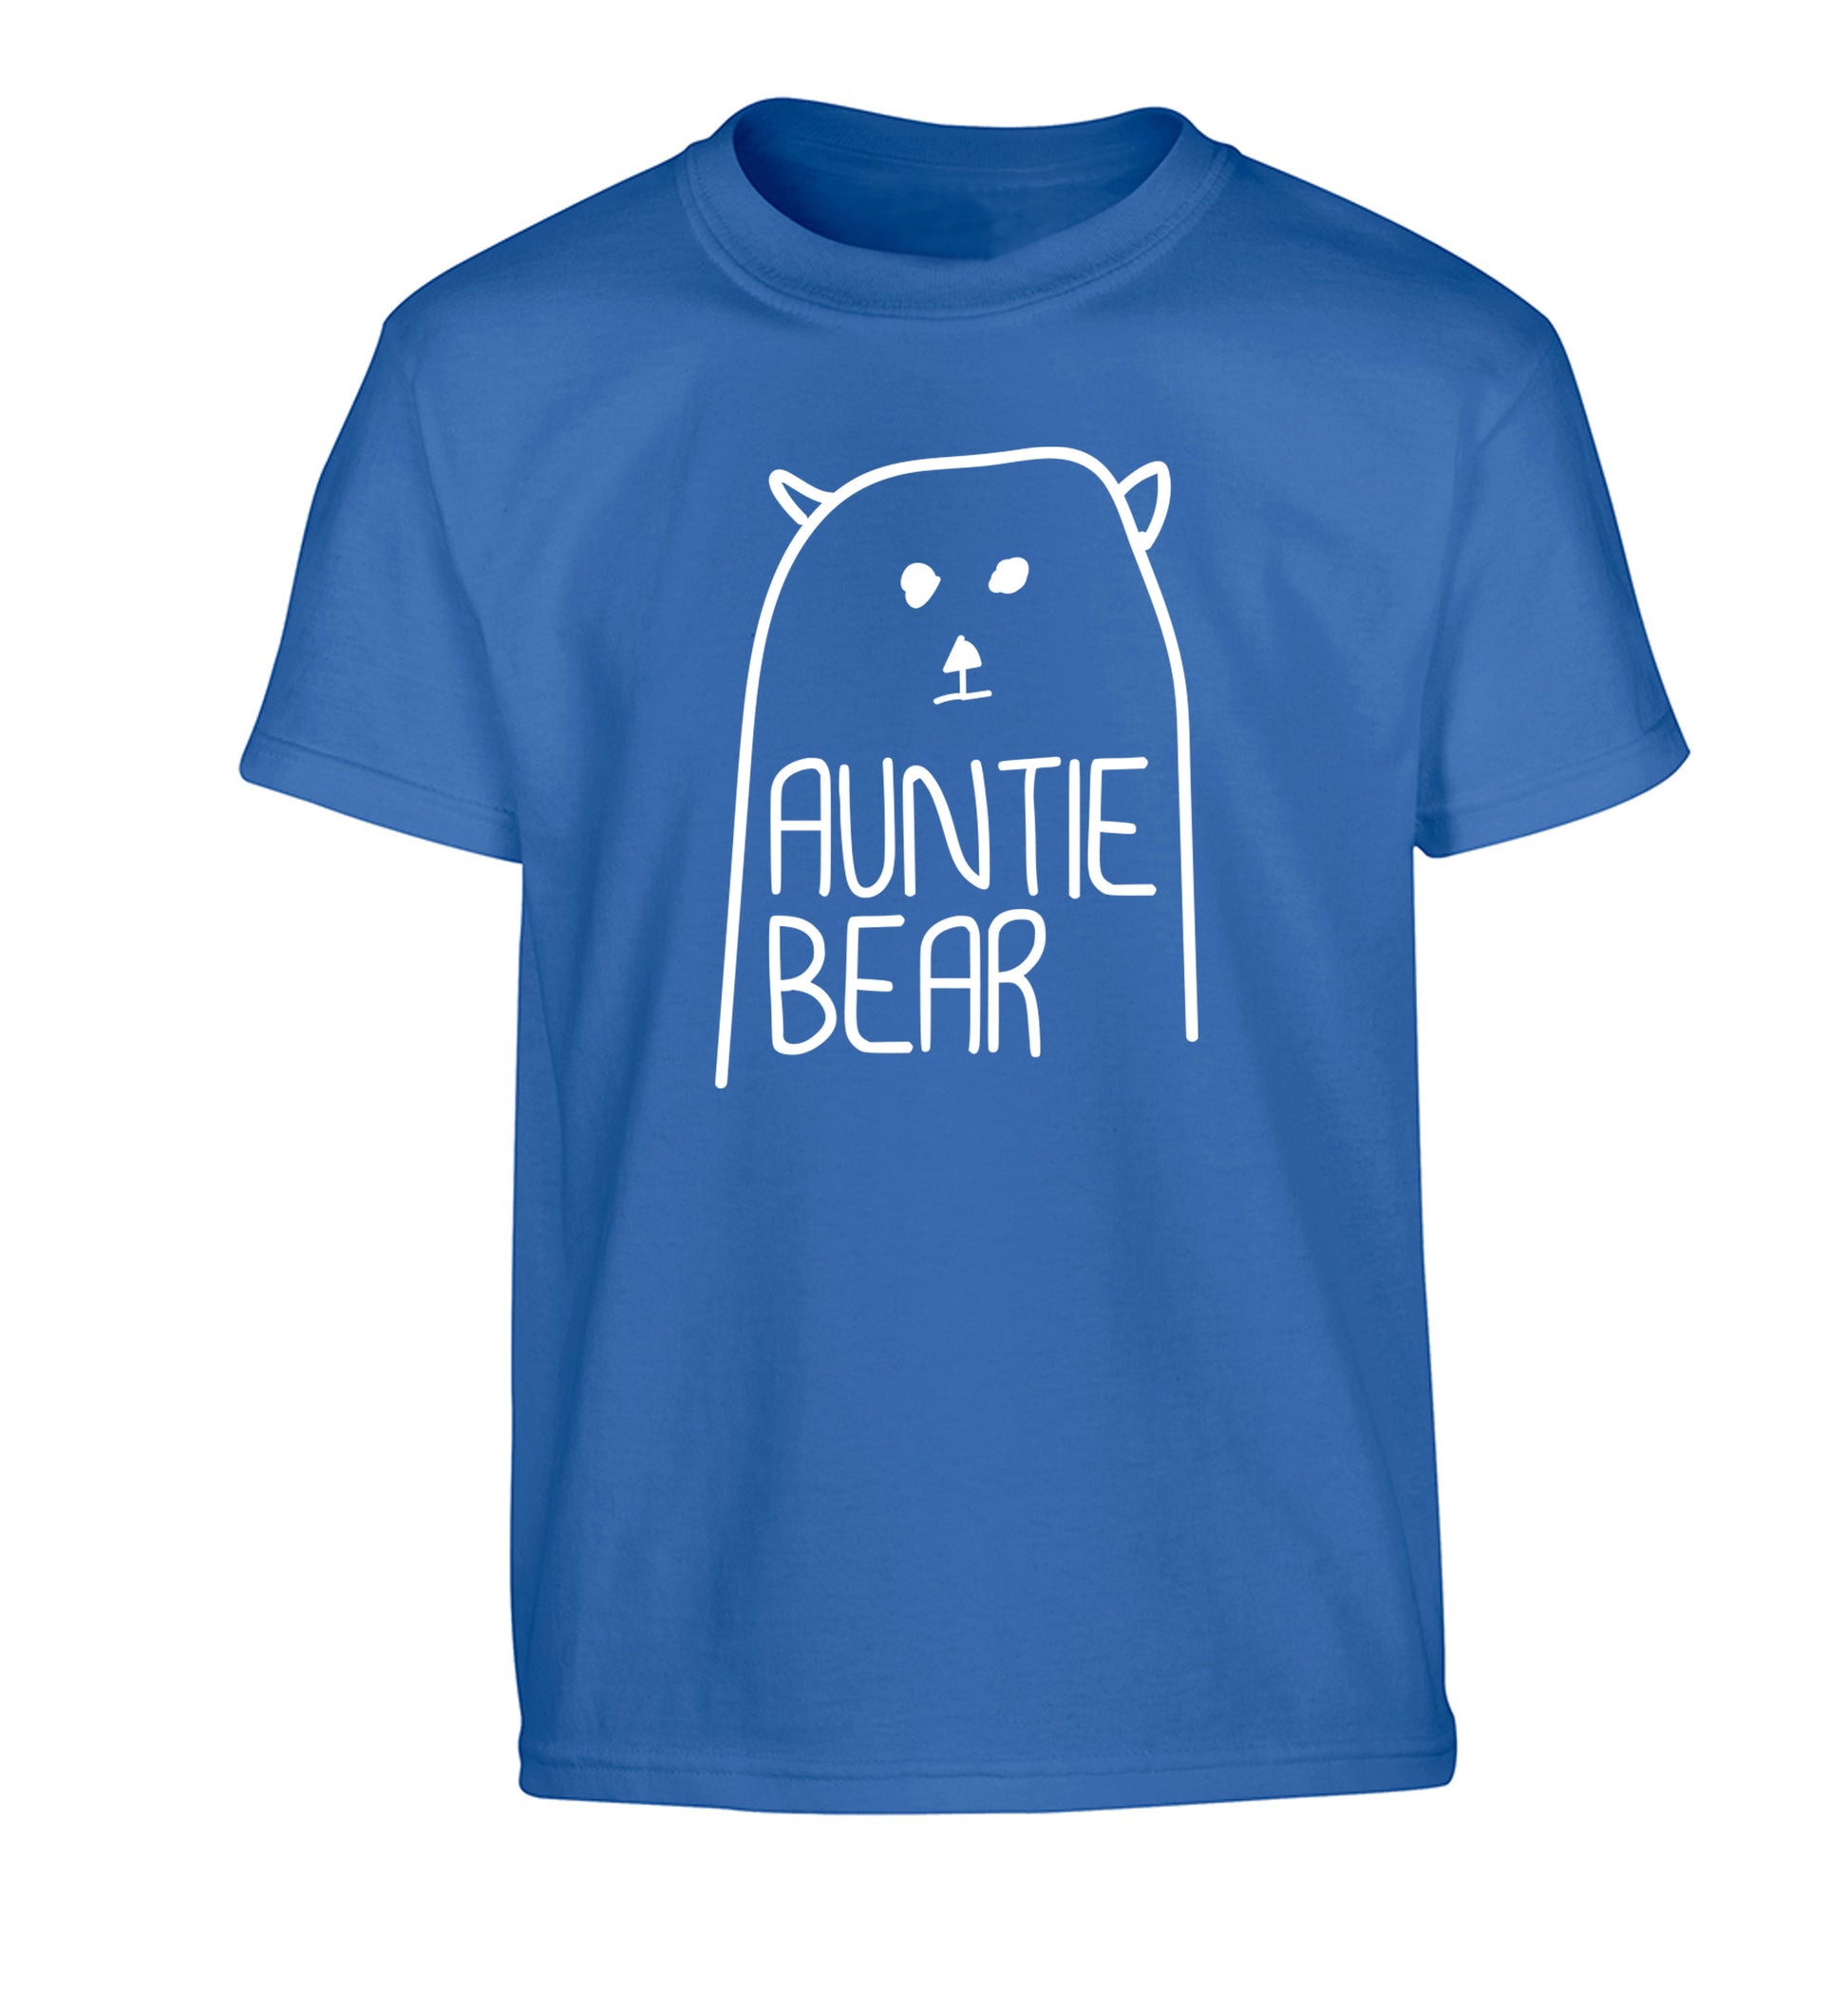 Auntie bear Children's blue Tshirt 12-13 Years